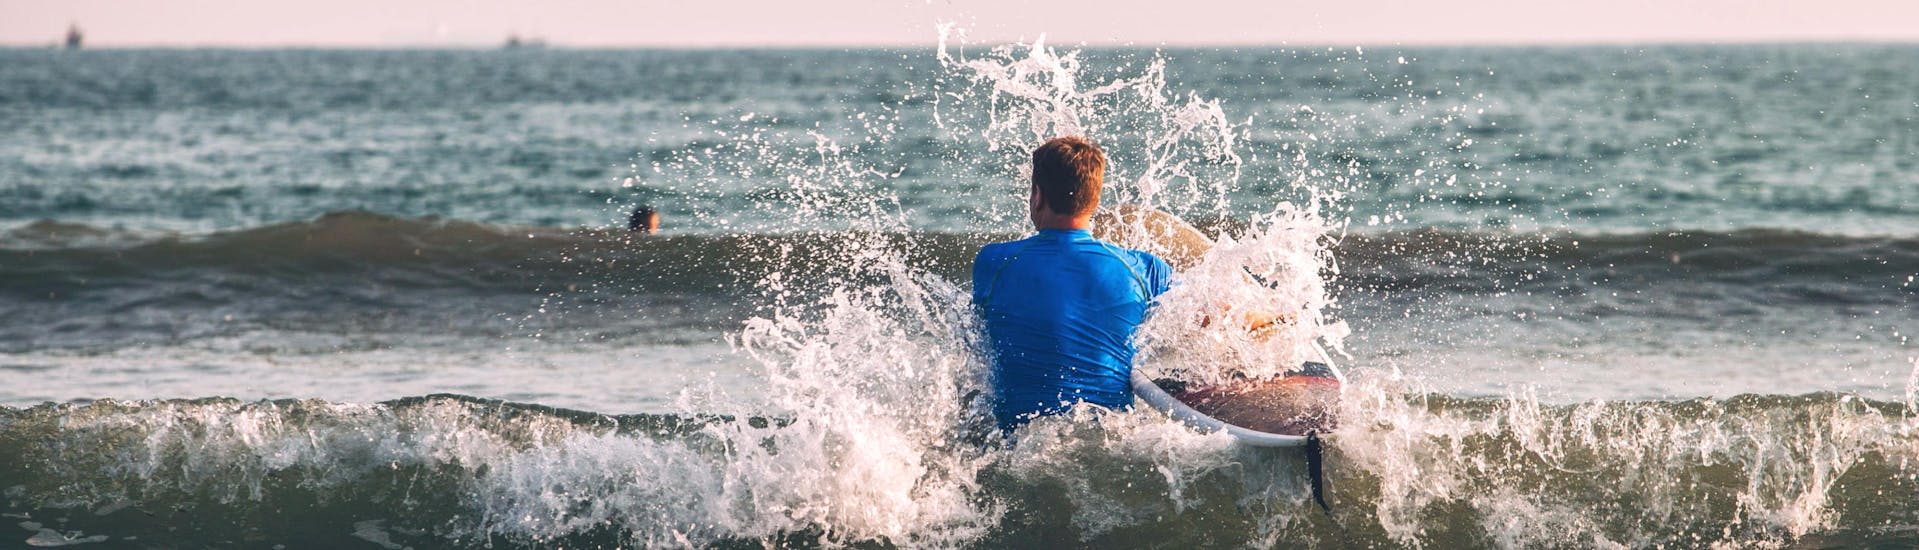 Un jeune homme patauge dans l'eau sur sa planche pendant une sortie surf à Hossegor.